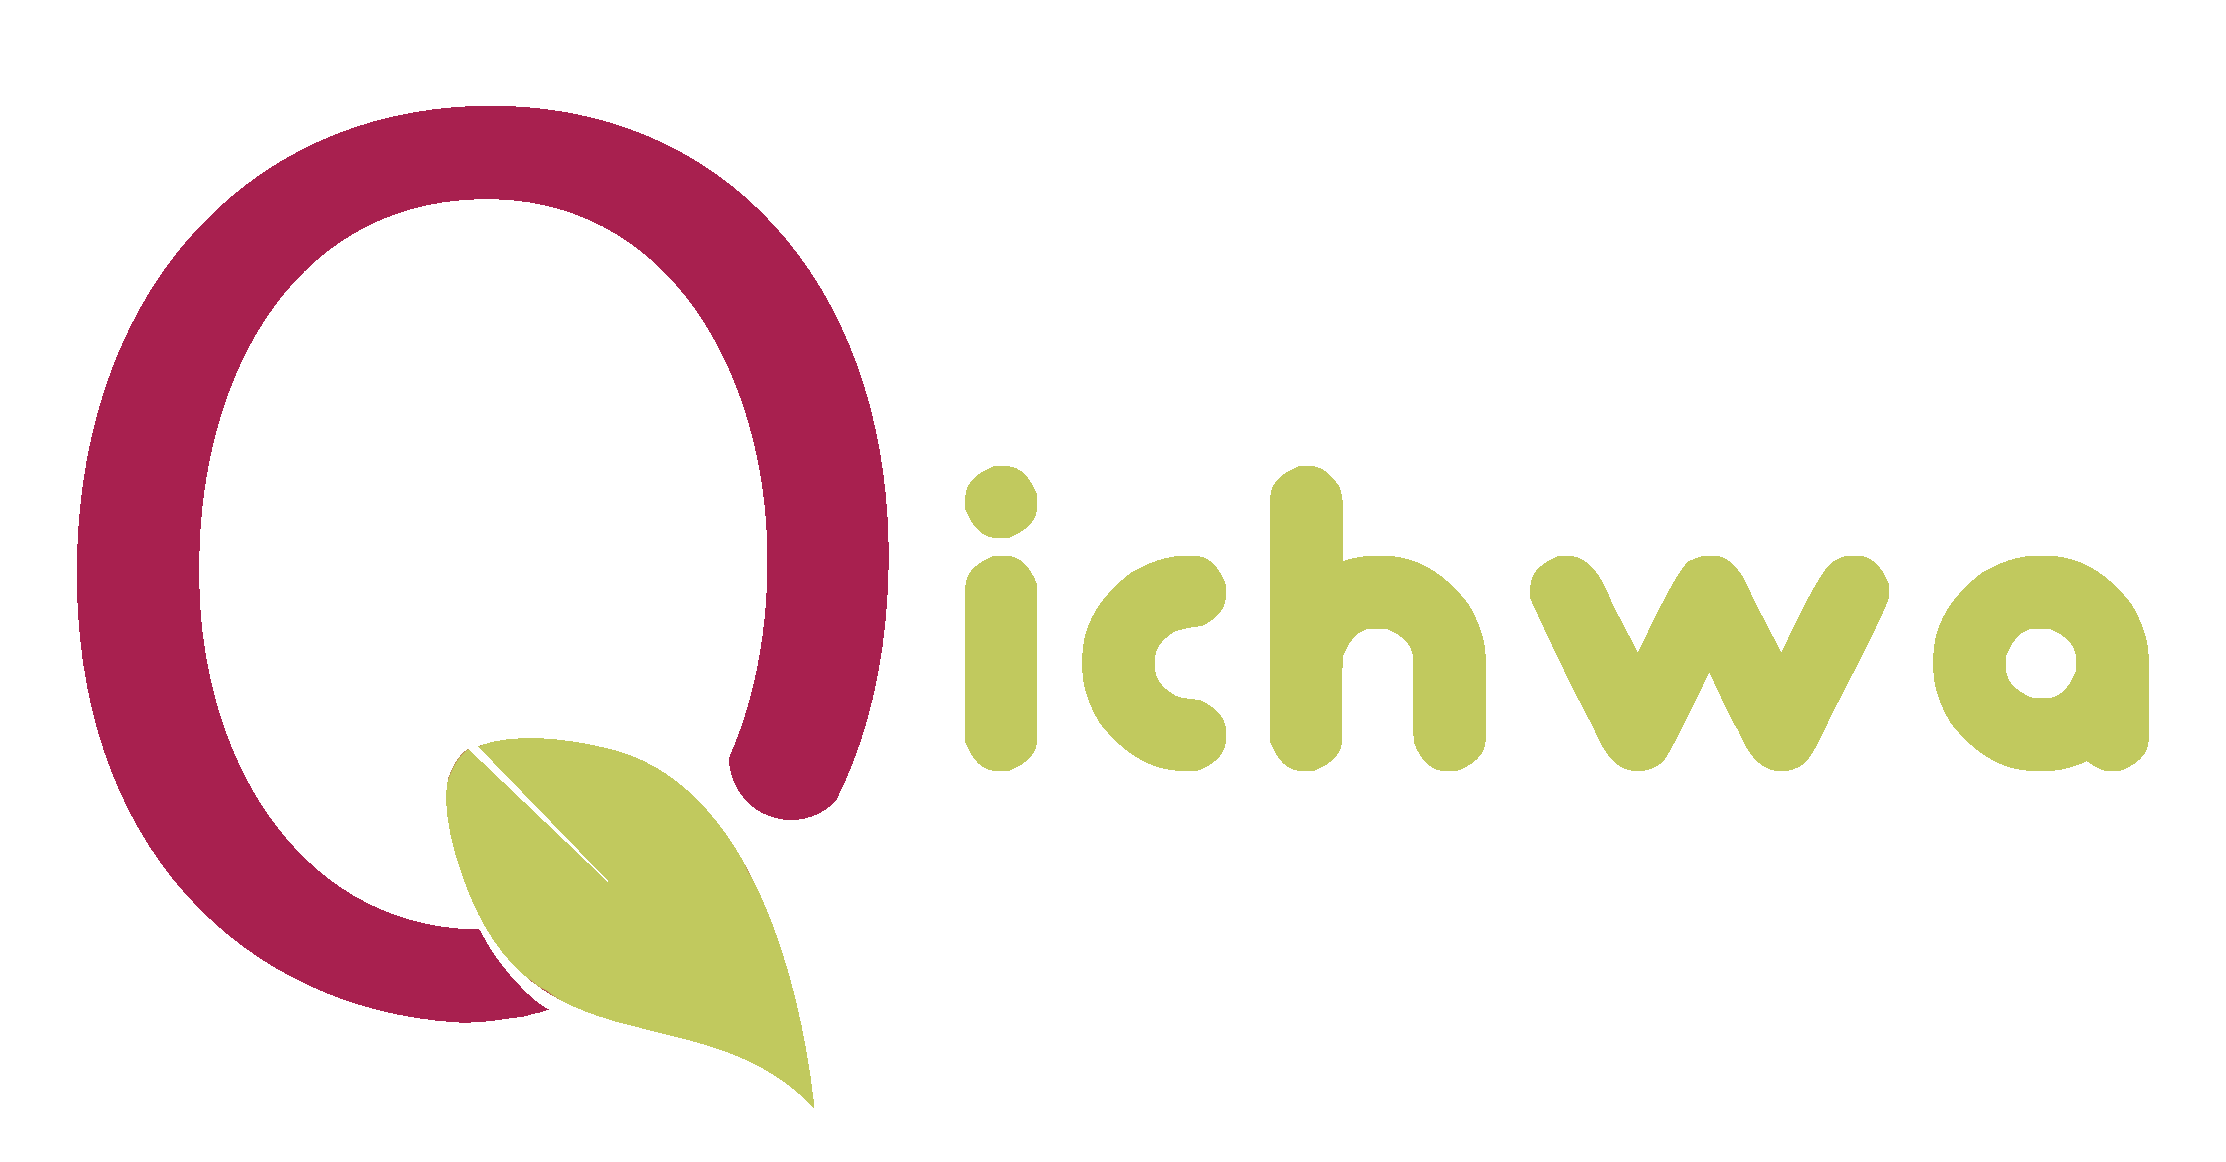 Qichwa 2.0